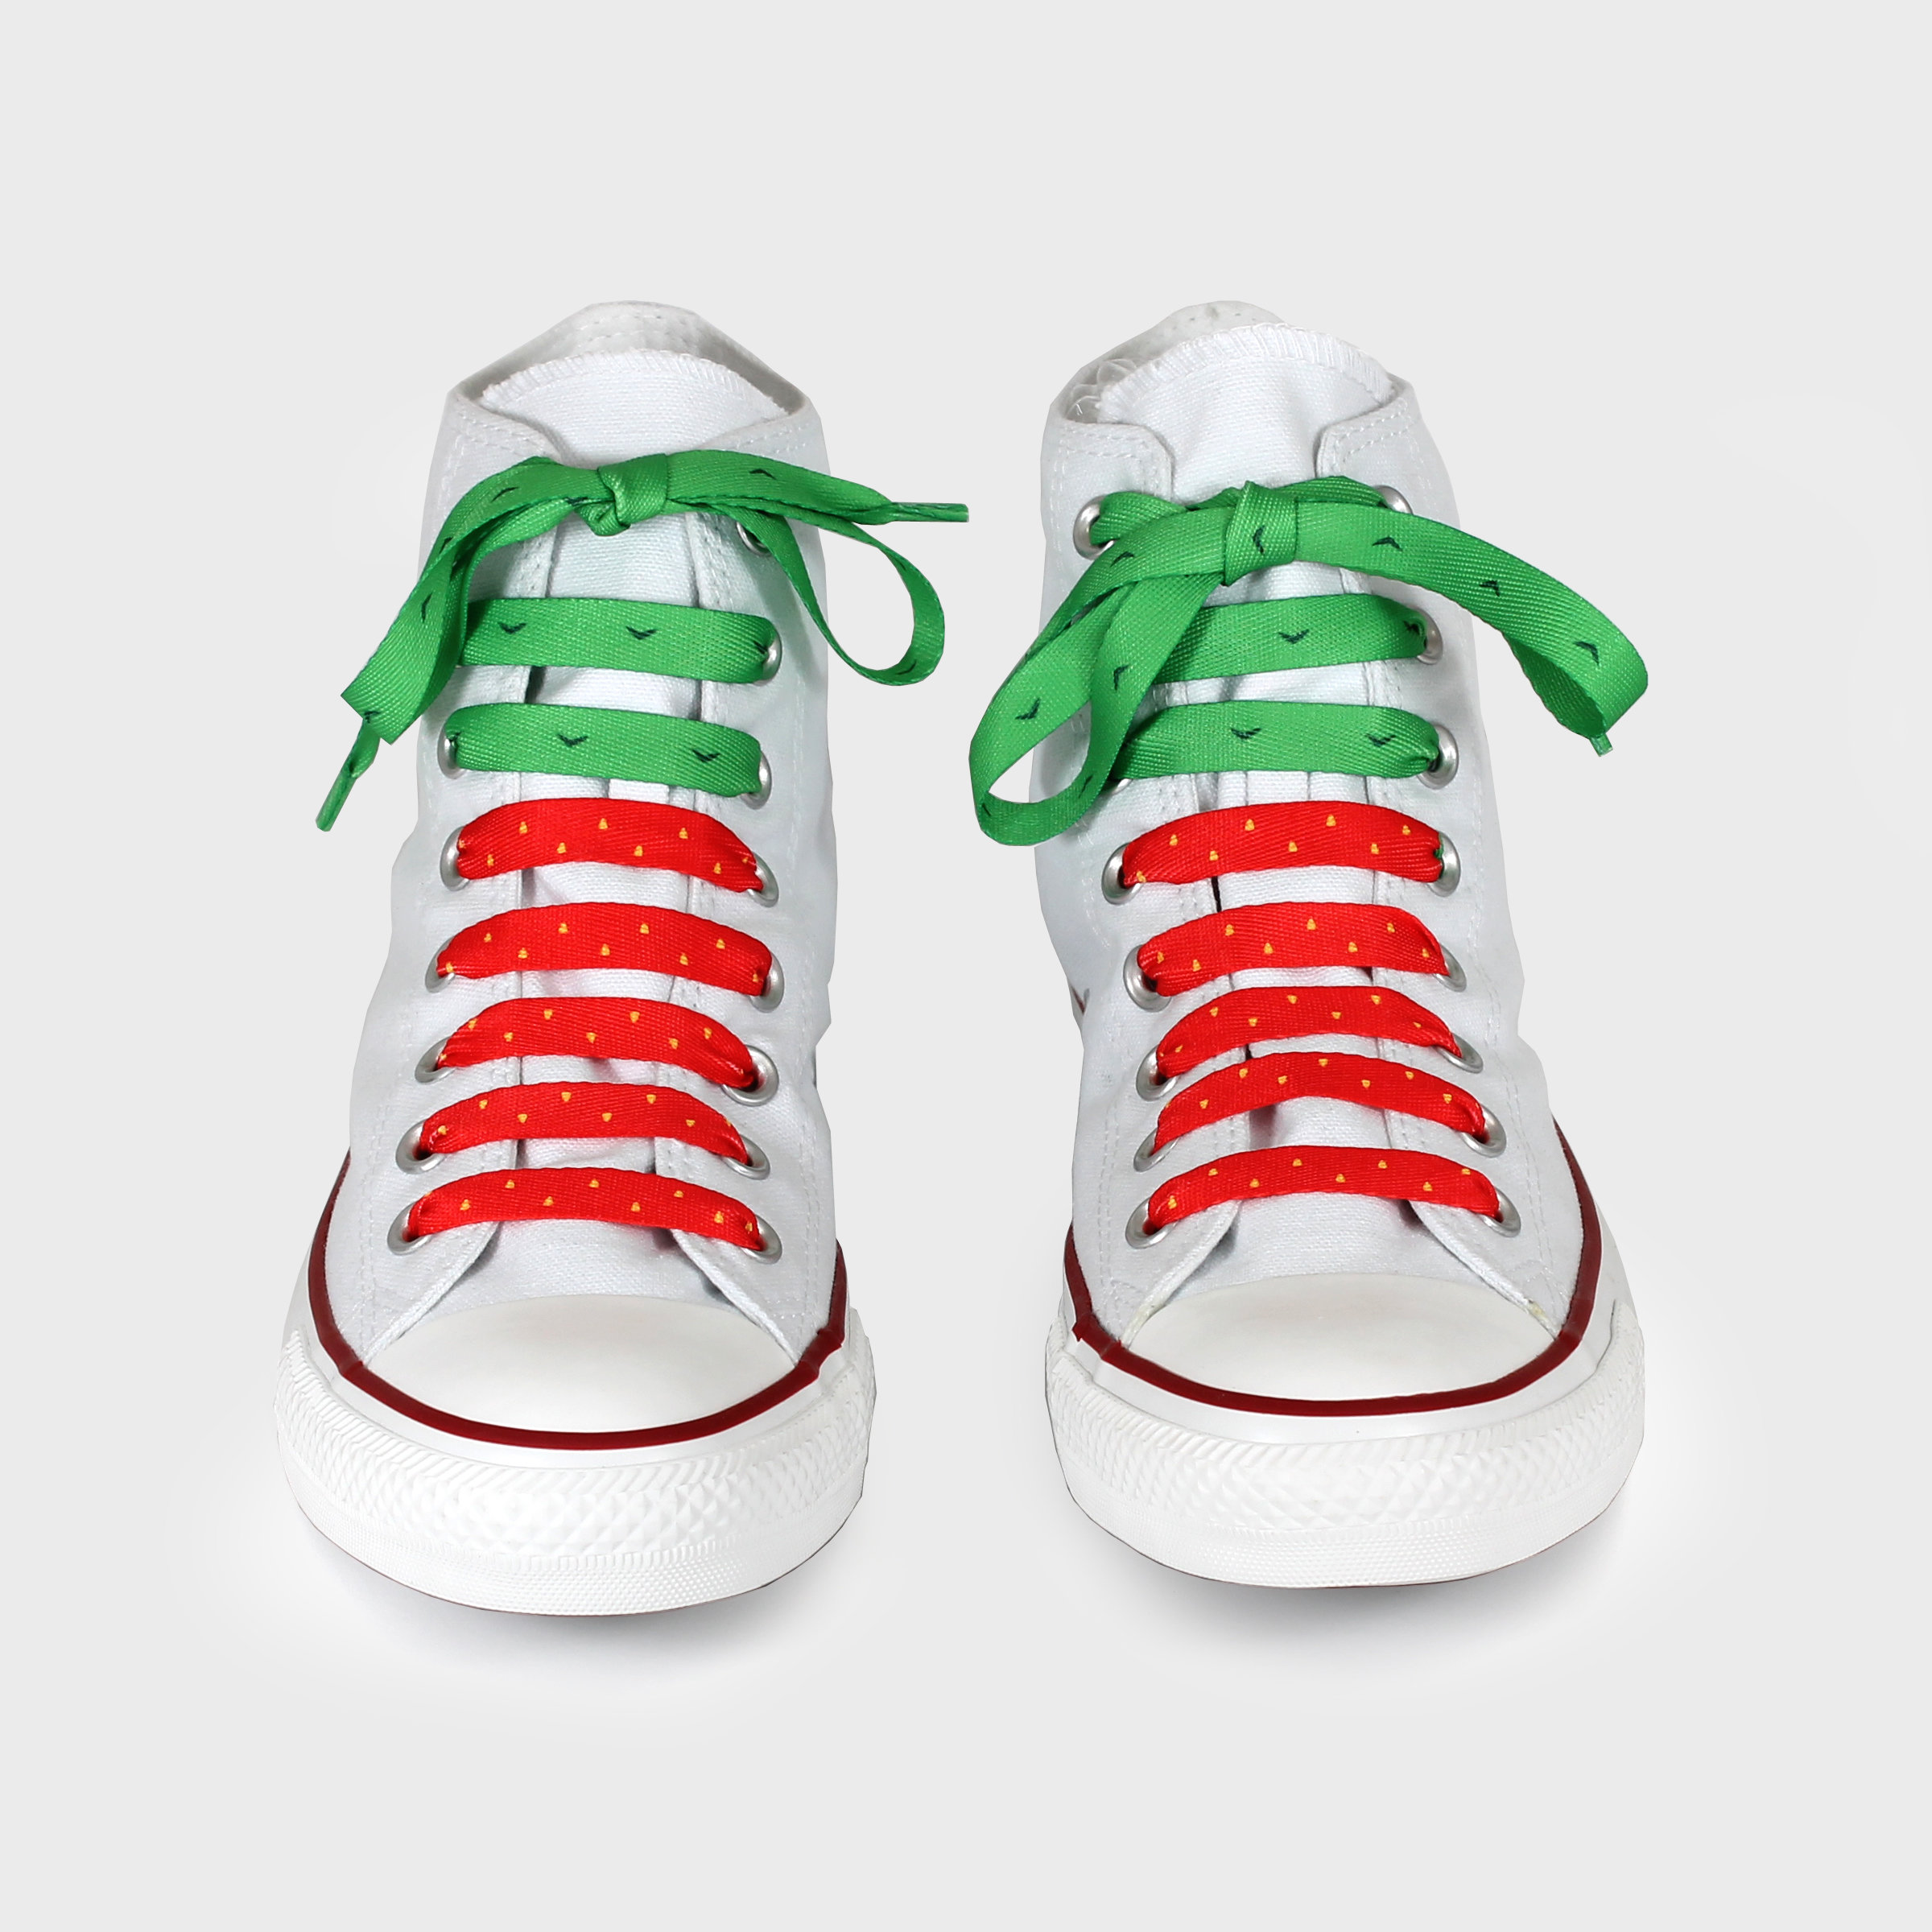 crazy shoelaces designs